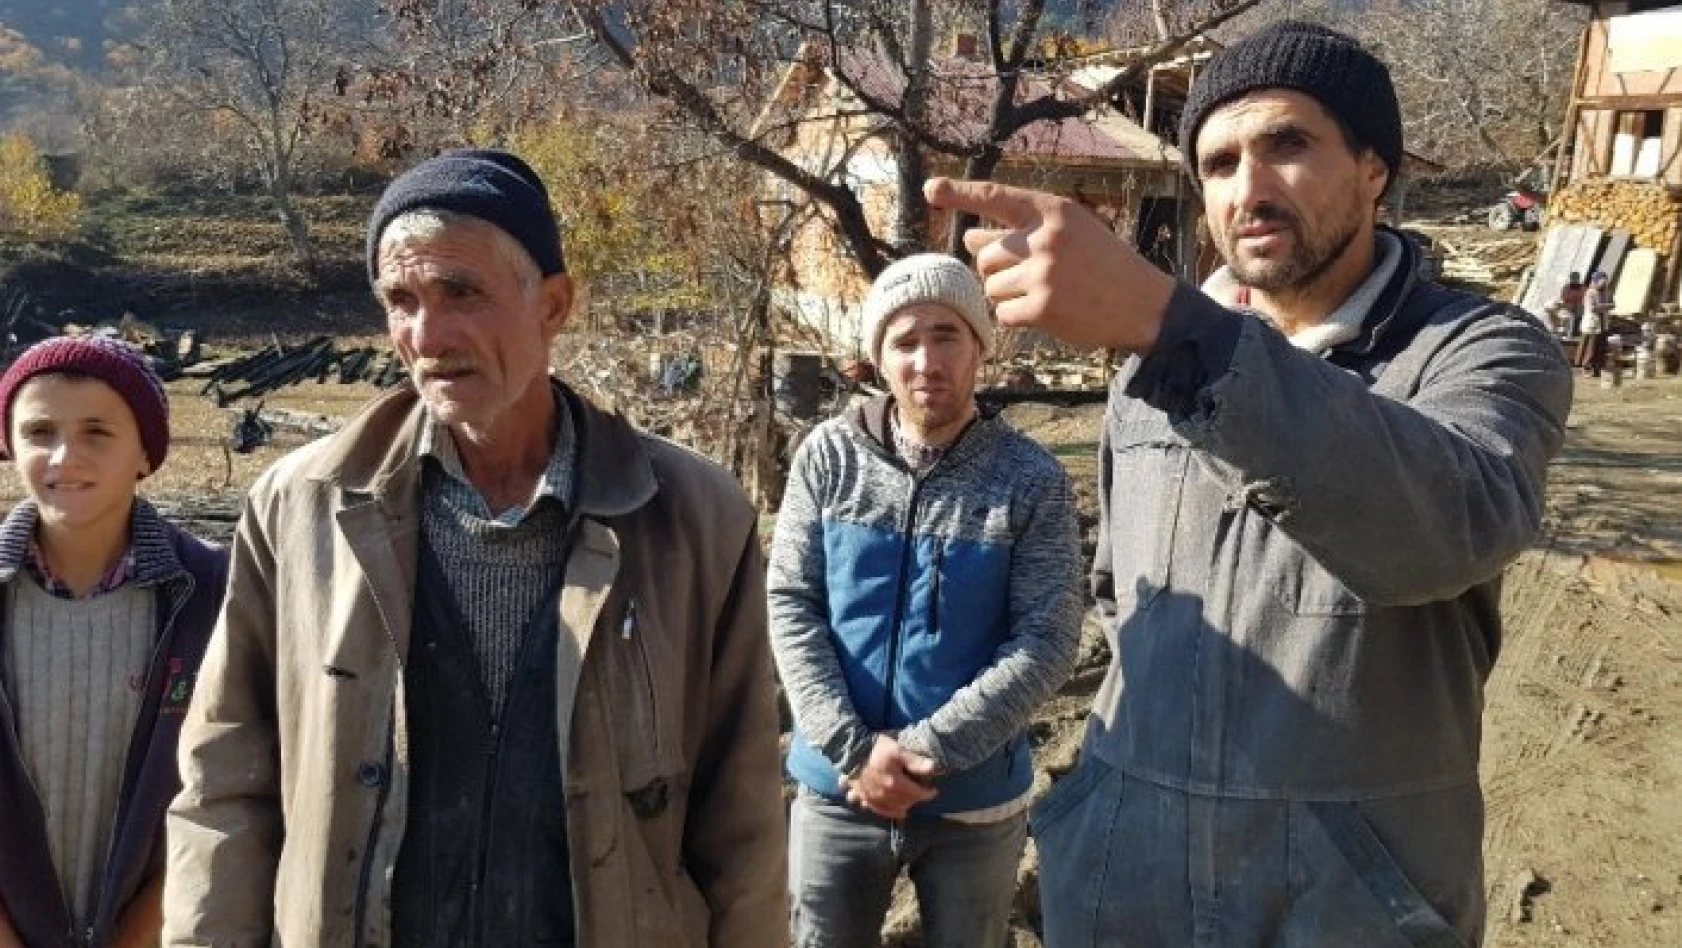 Tosya'da evi yanan köylü ve ailesi verilen sözlerin yerine getirilmesini istiyor